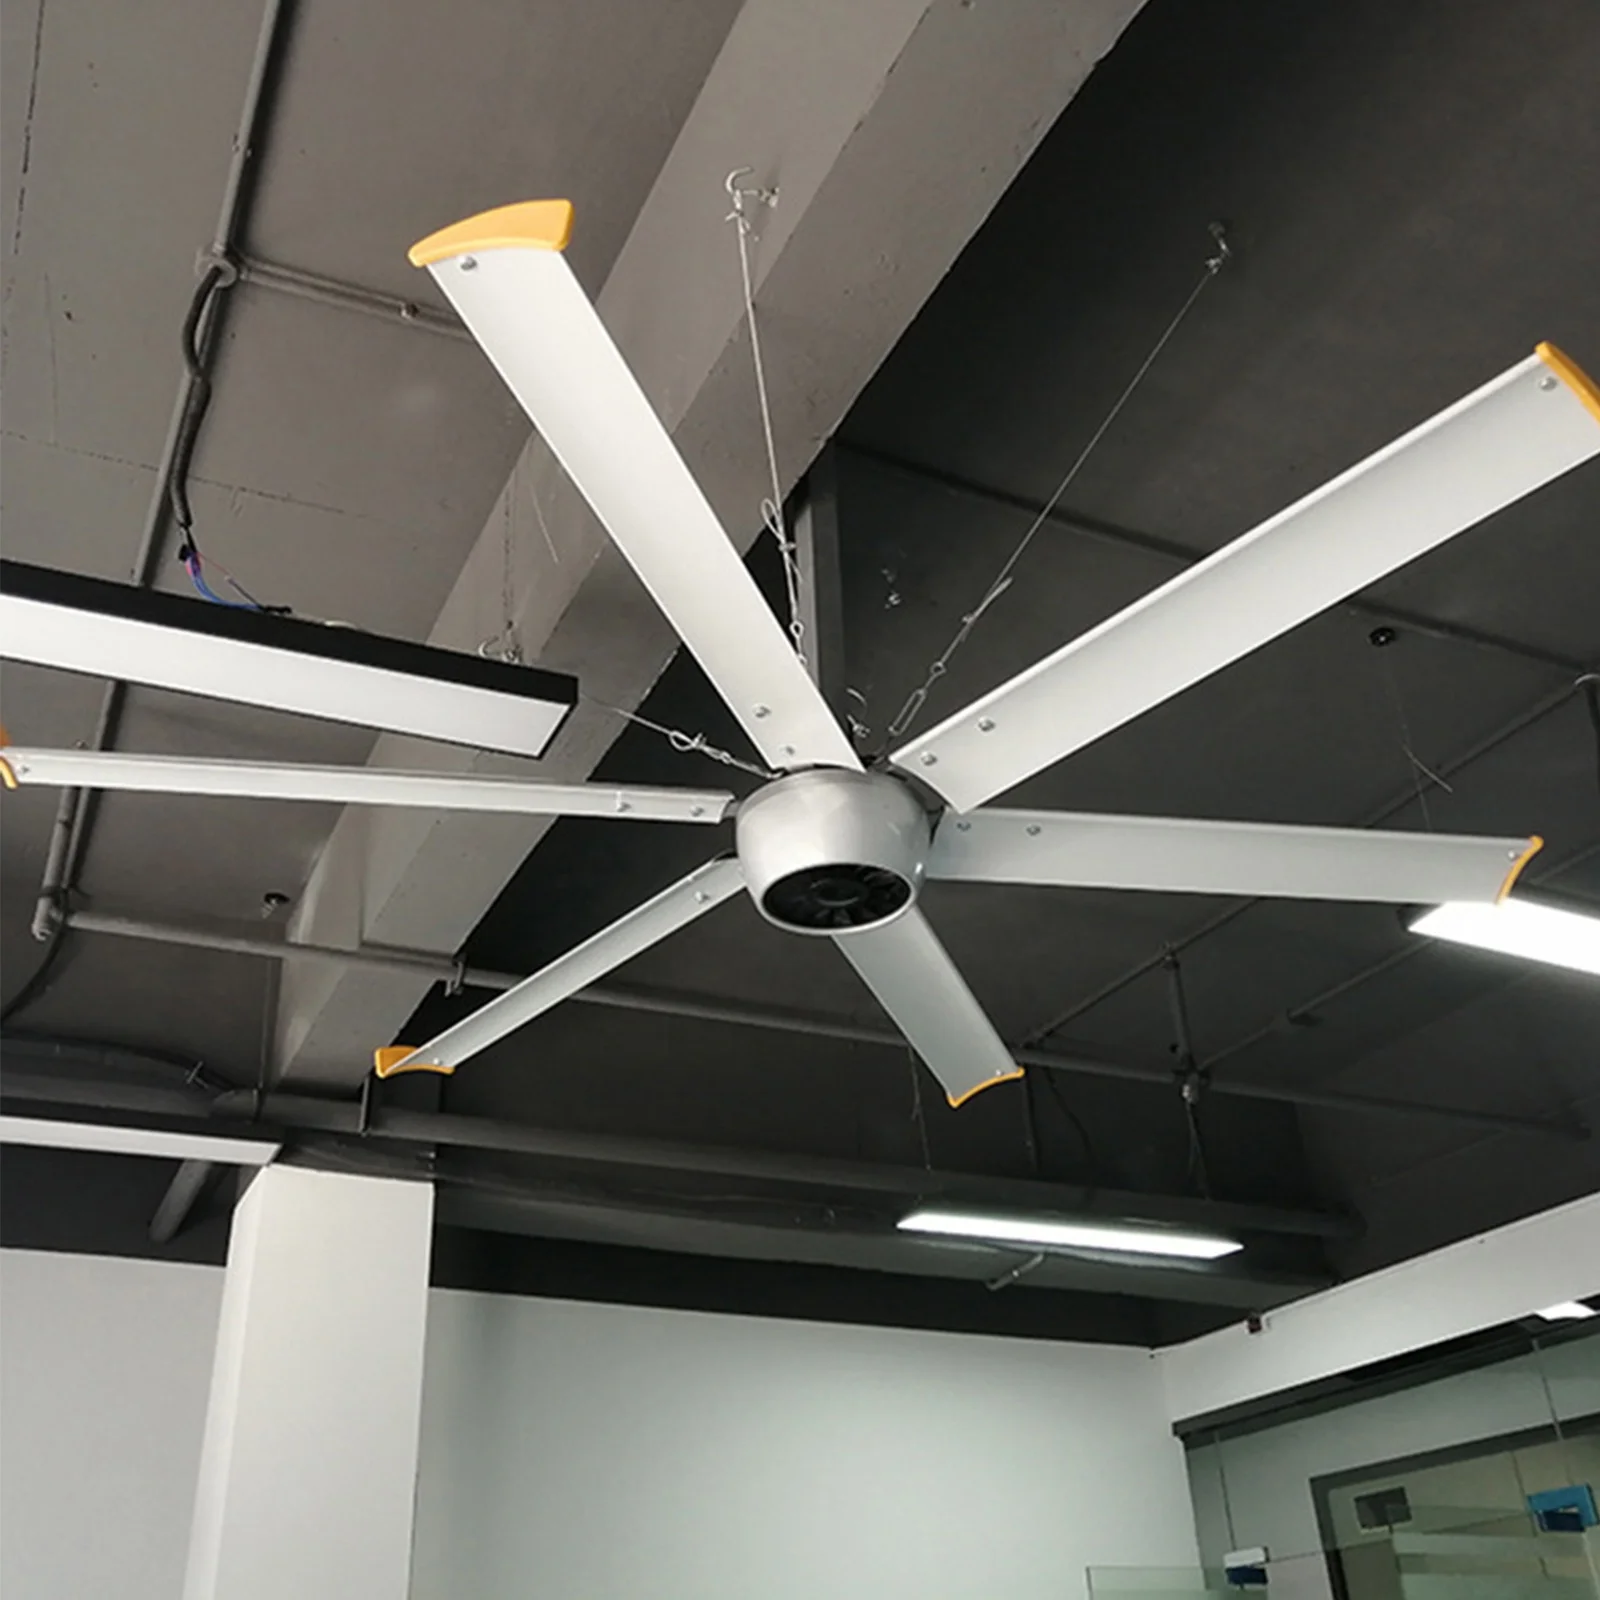 Большой вентилятор с потоком воздуха 15000 (м3/мин), HVLS вентилятор из Малайзии, потолочный вентилятор 7,3 метра